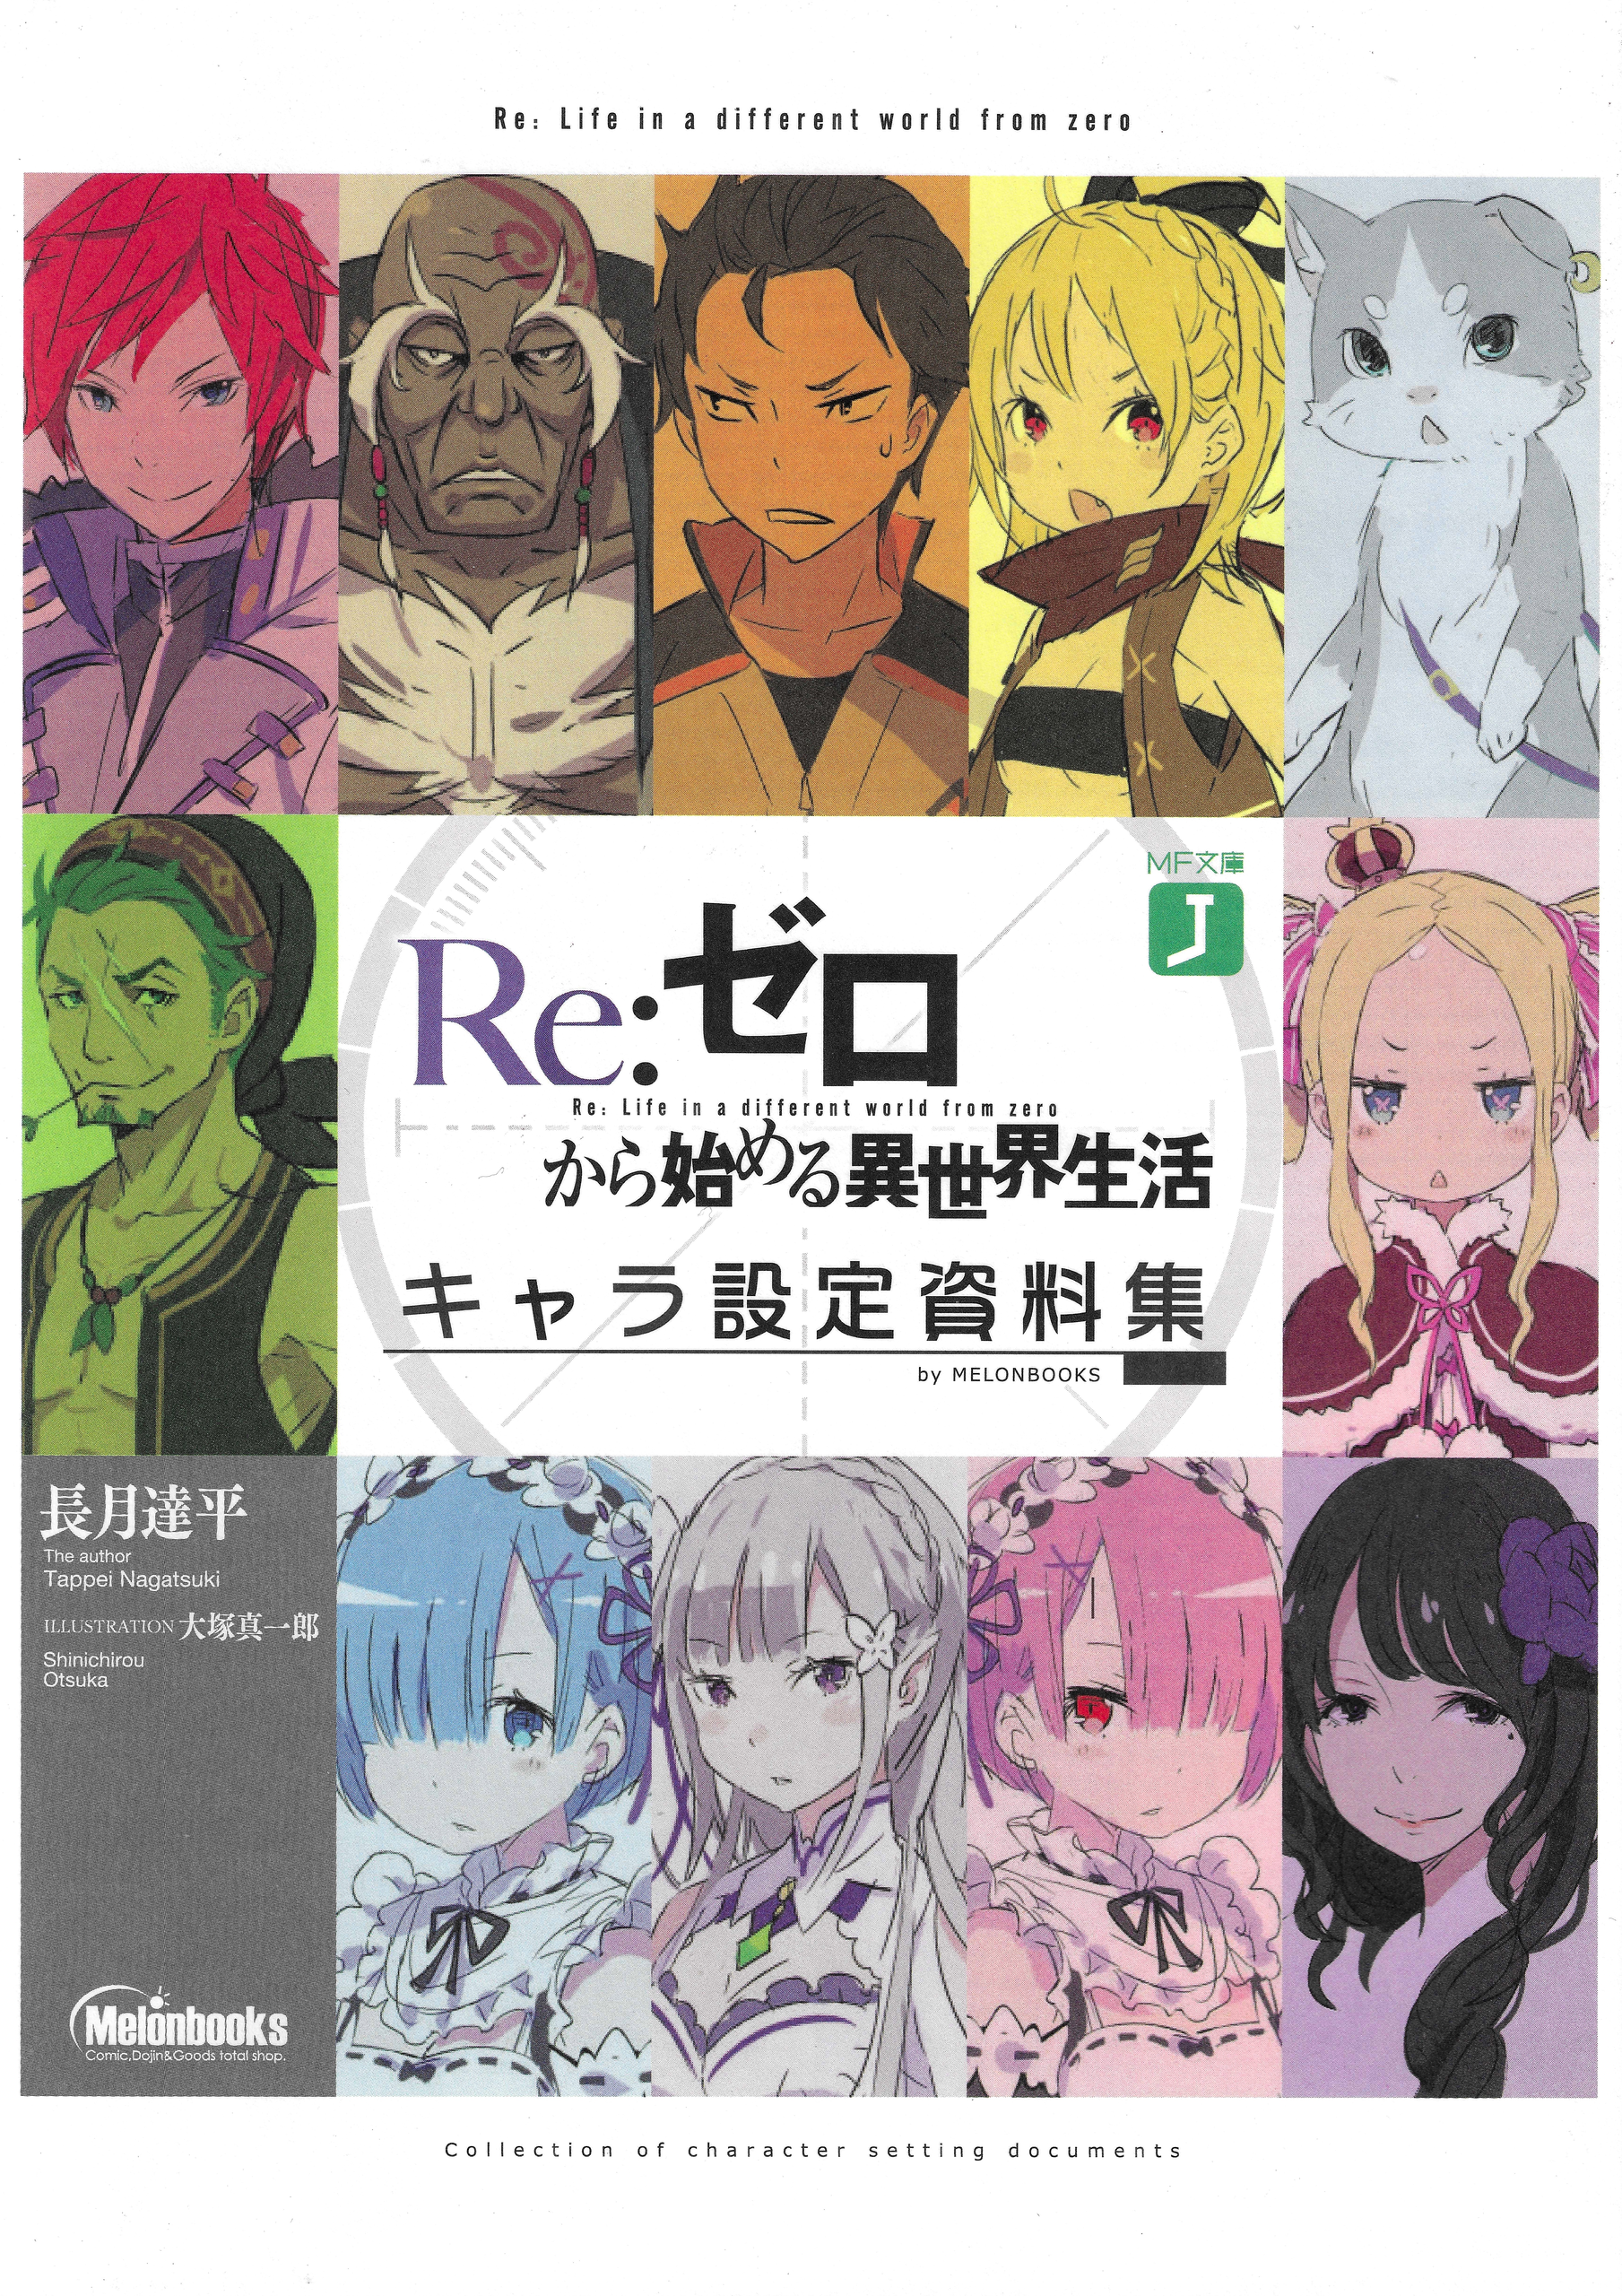 Lista de episódios de Re:Zero – Wikipédia, a enciclopédia livre